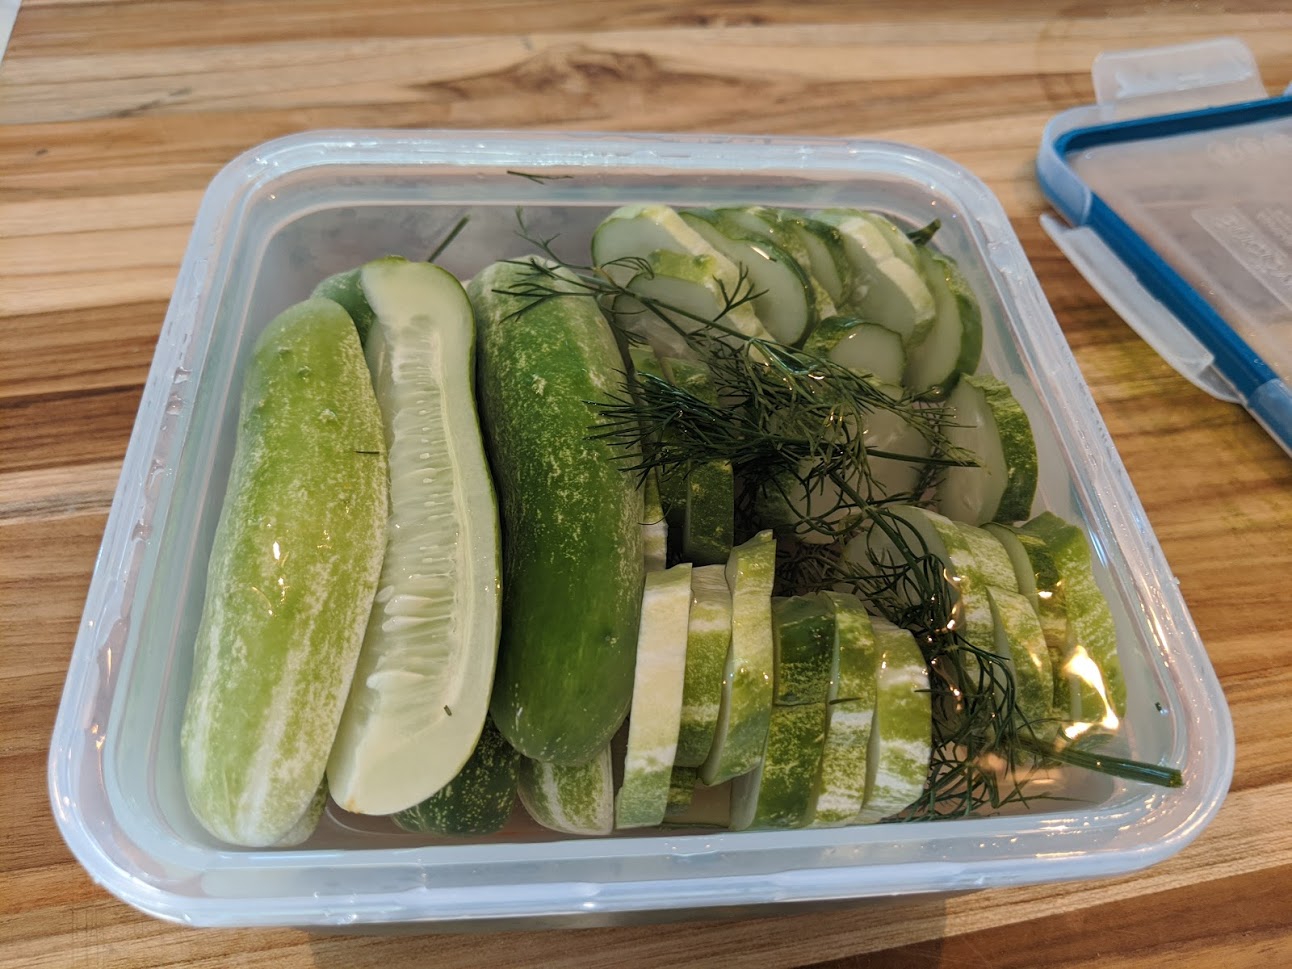 Refrigerator Dill Pickles 